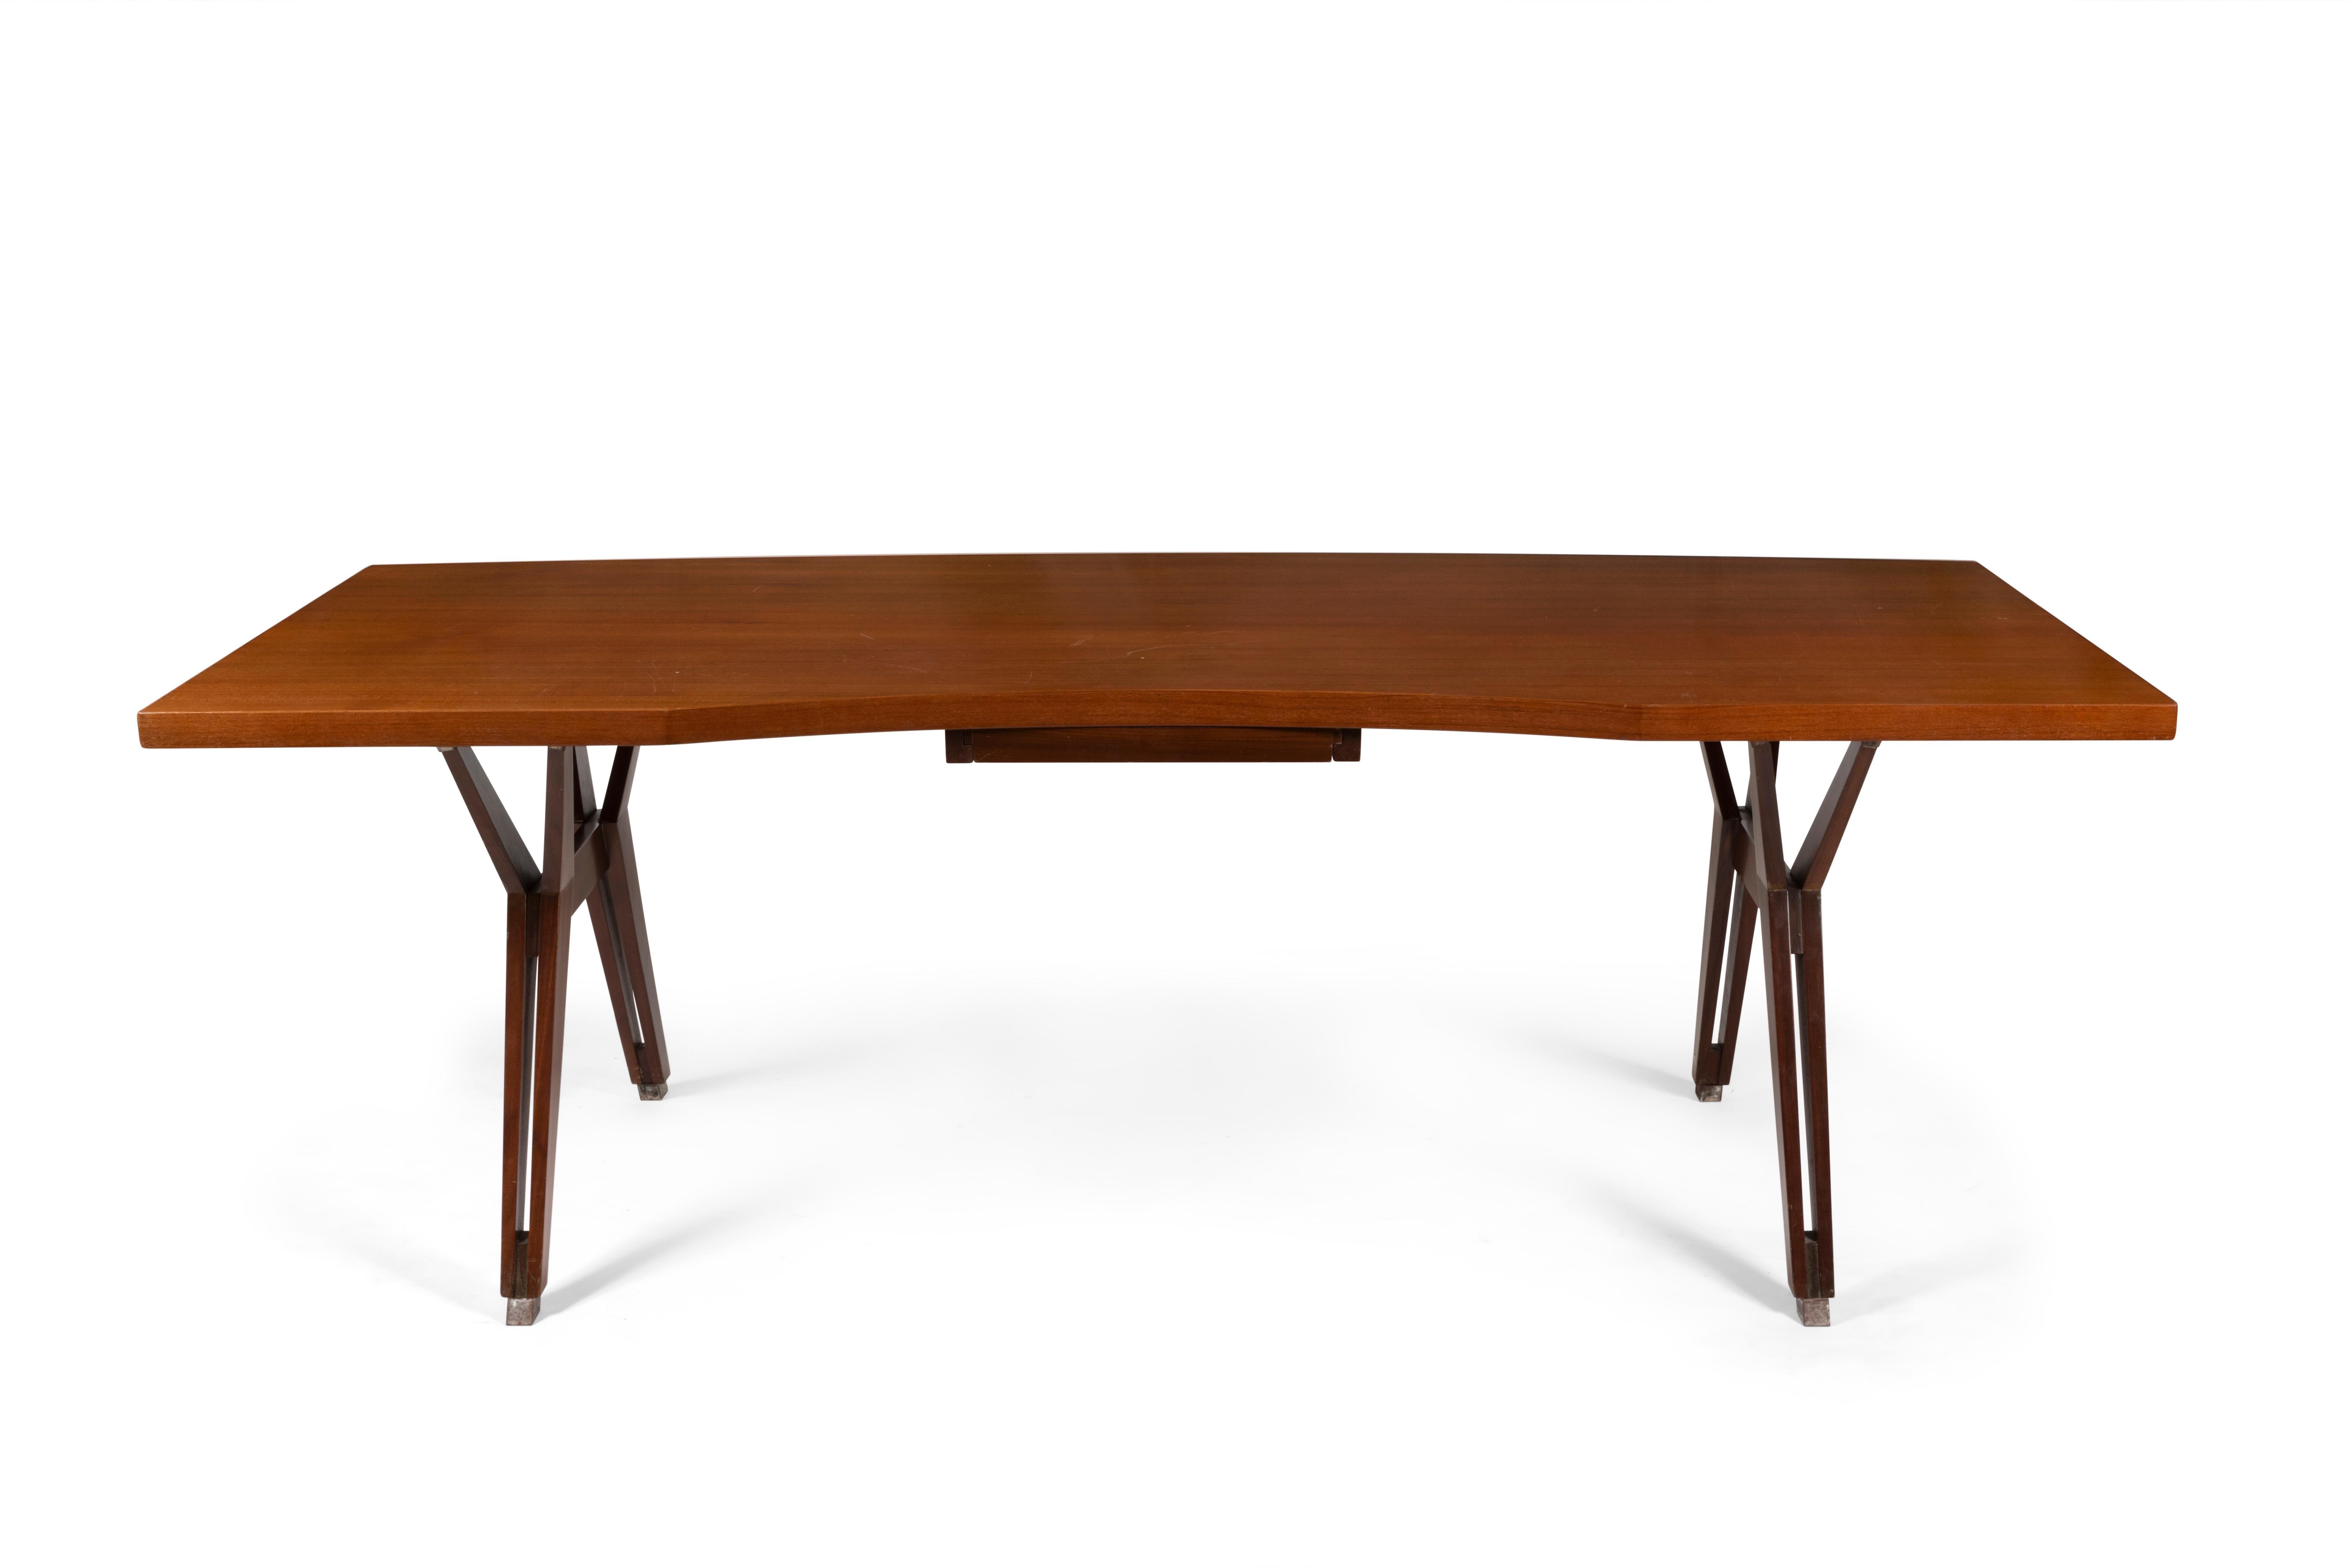 Bureau ou grande table avec plateau cintré en palissandre, tiroir central, piétement en acier, Ico Parisi, circa 1958.

Abmessungen: H72 x L210 x P90cm